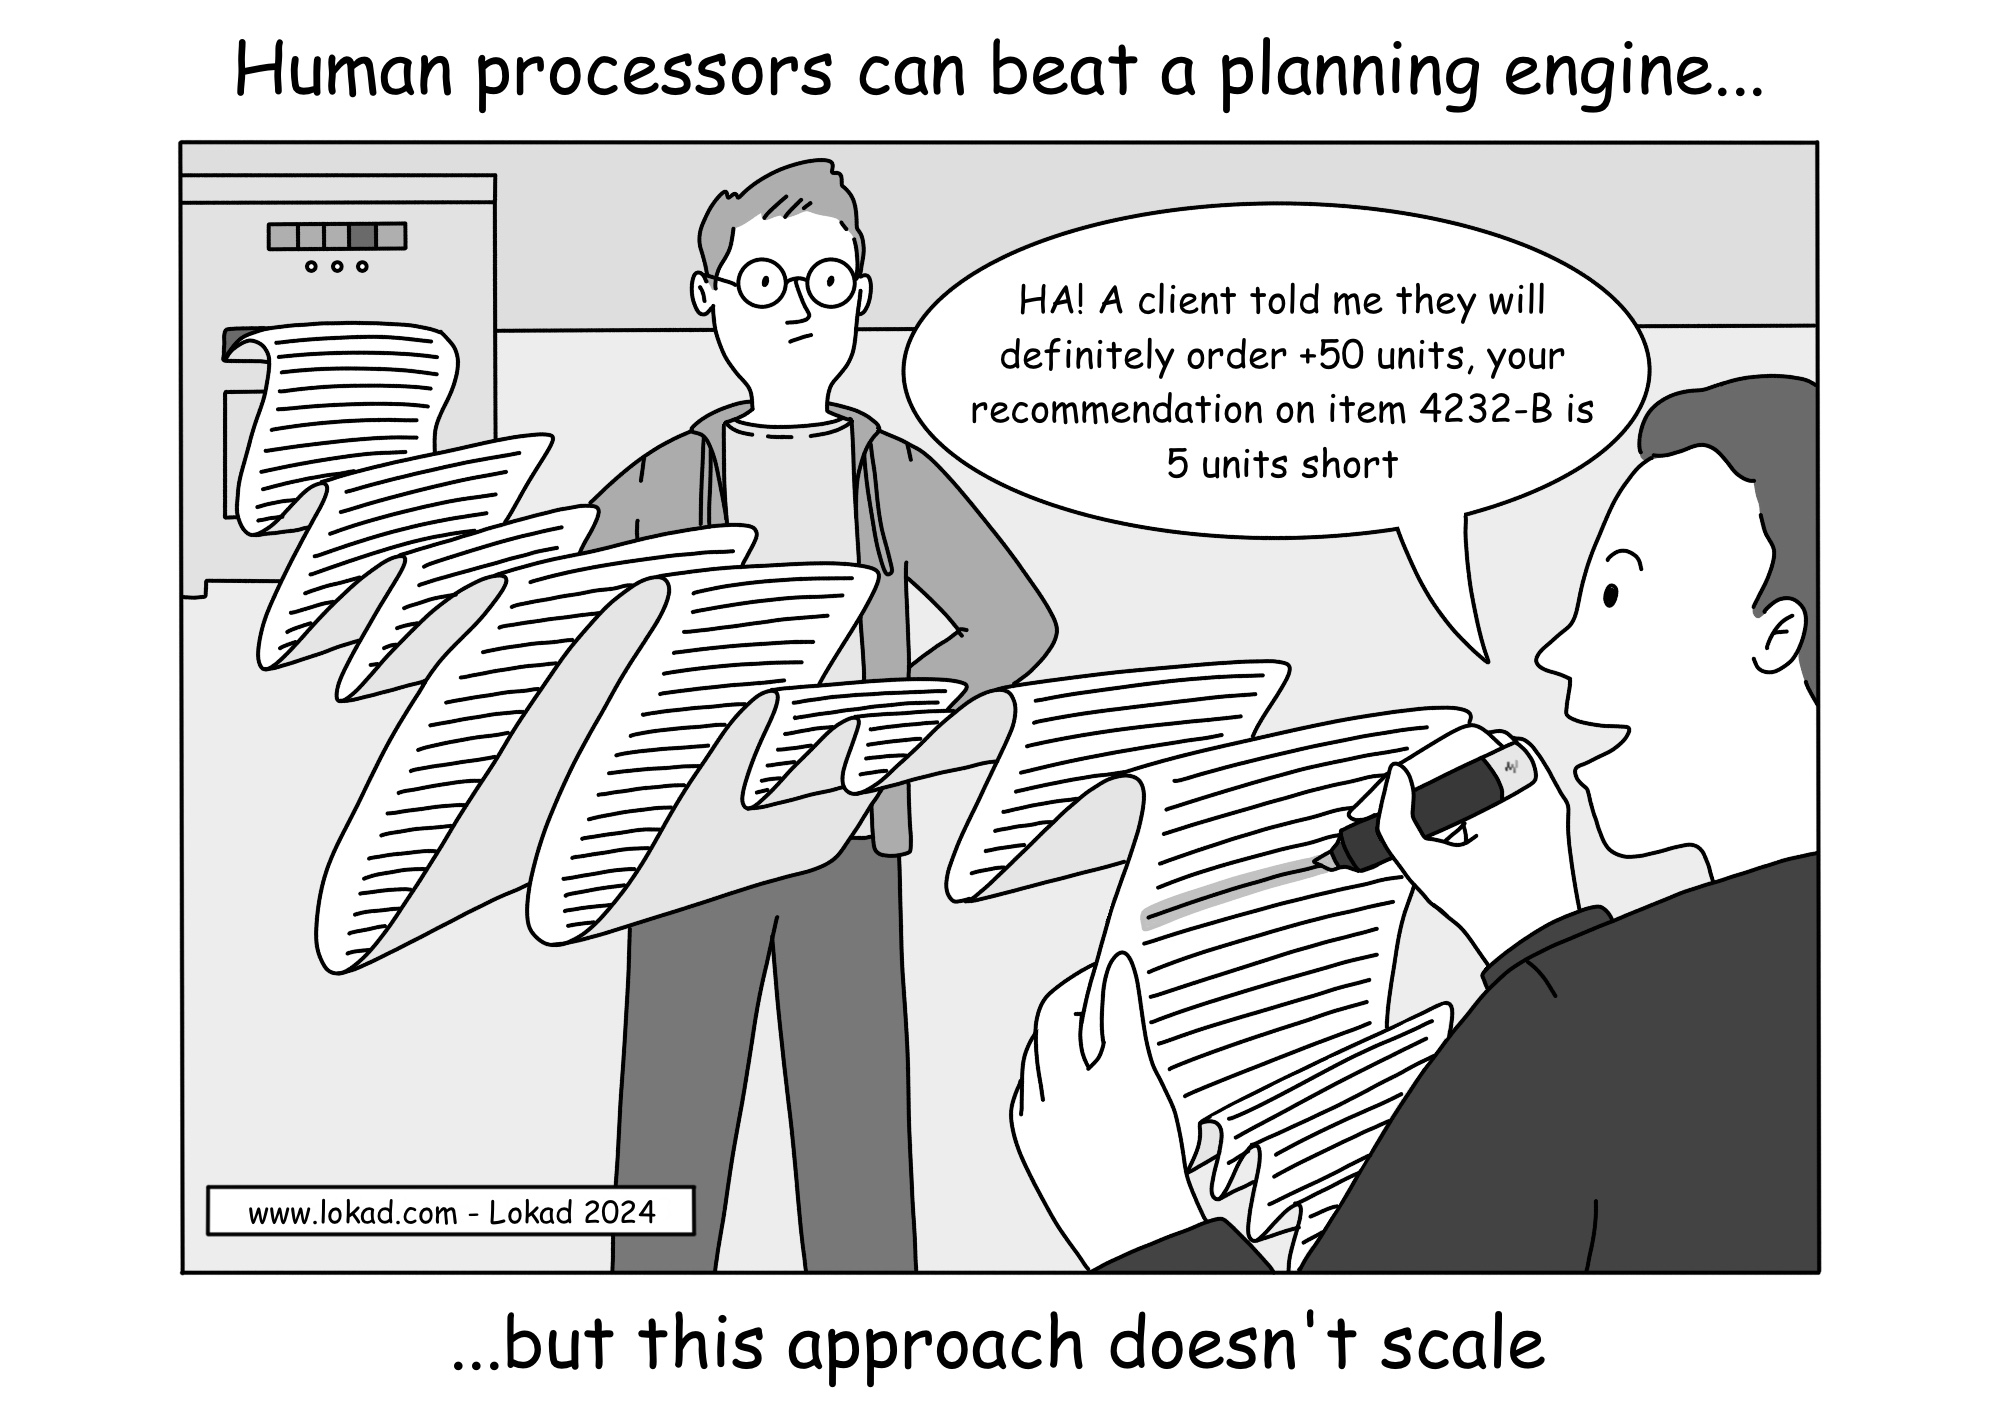 Los procesadores humanos pueden superar a un motor de planificación.